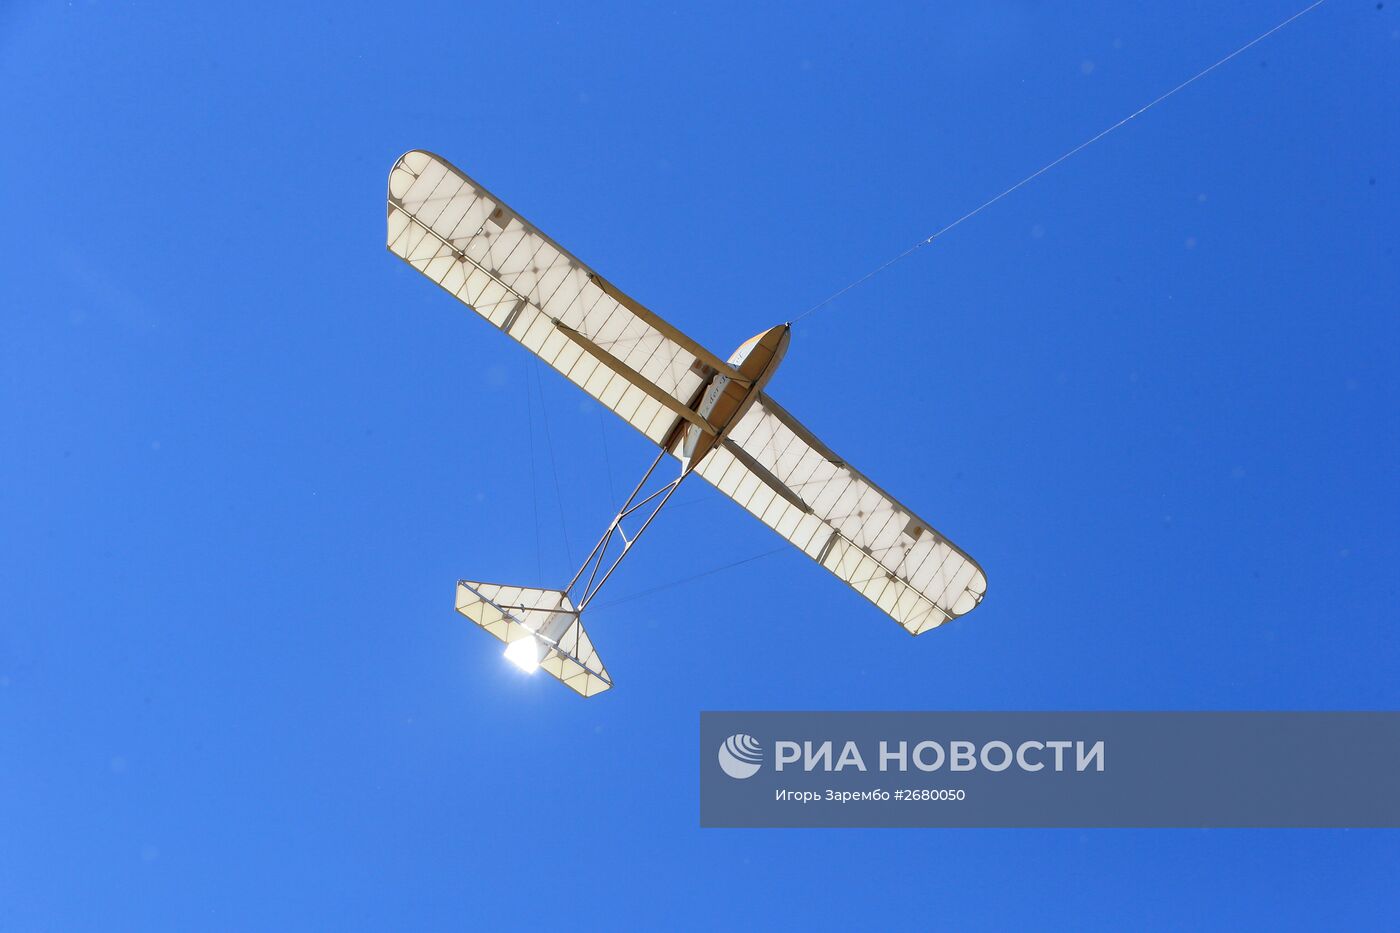 Международный слет планеристов в Калининградской области